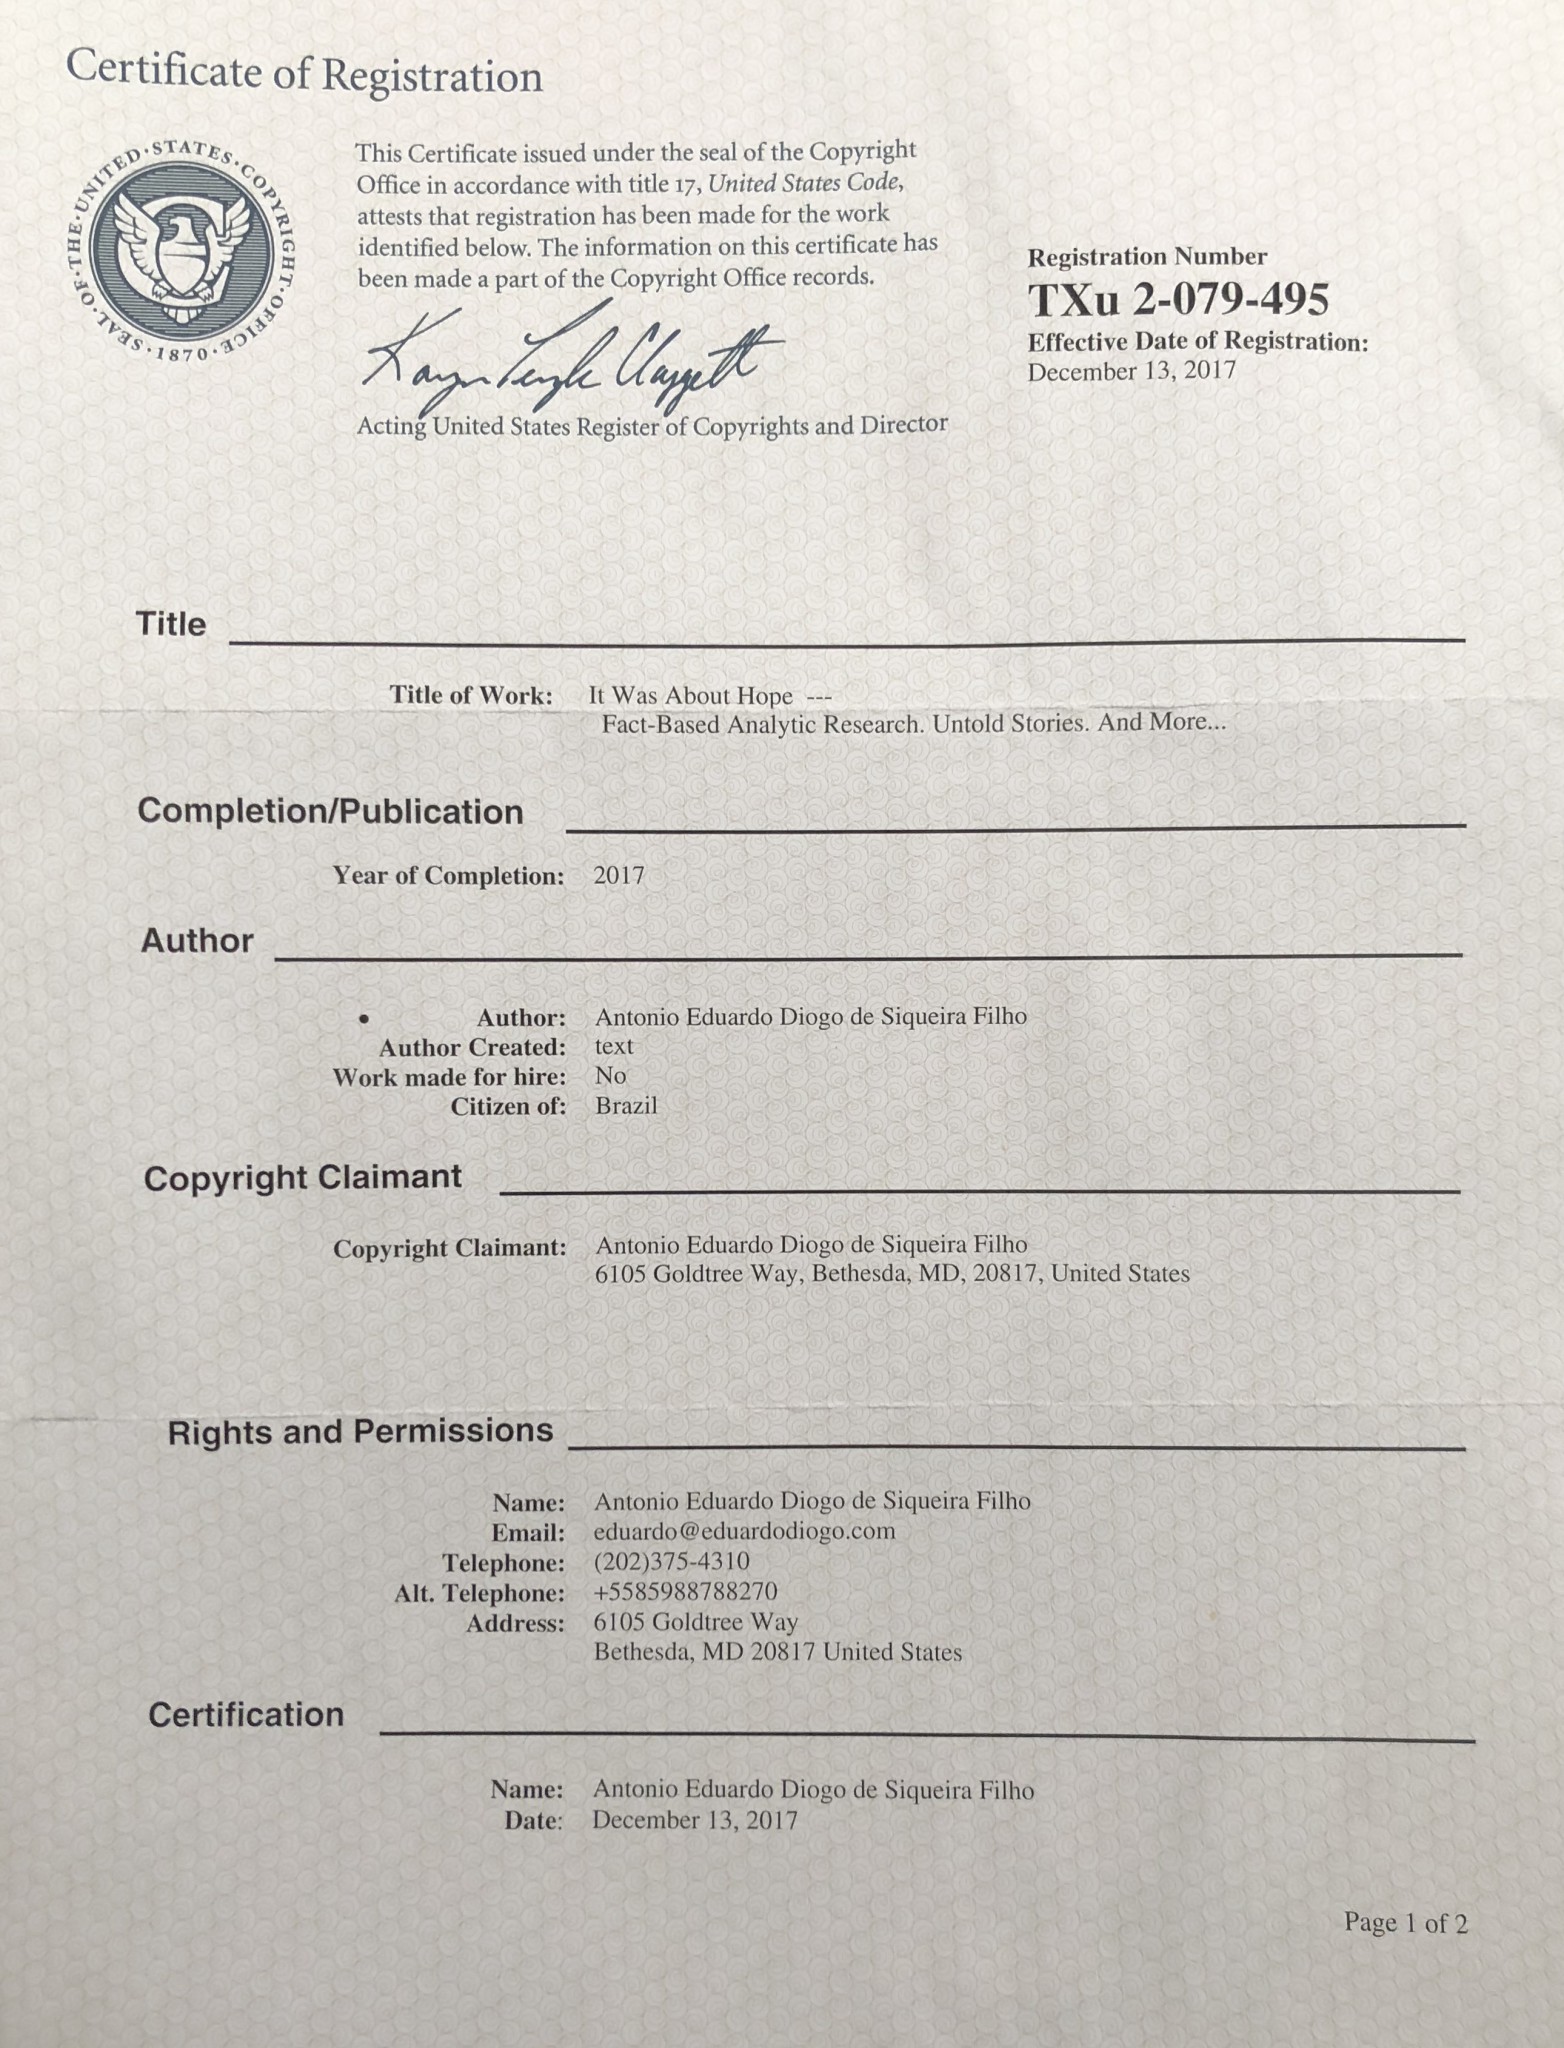 The Certificate of Registration Issued by the U.S. Copyright Office *** O Certificado de Registro Emitido pelo Orgão de Direitos Autorais dos EUA